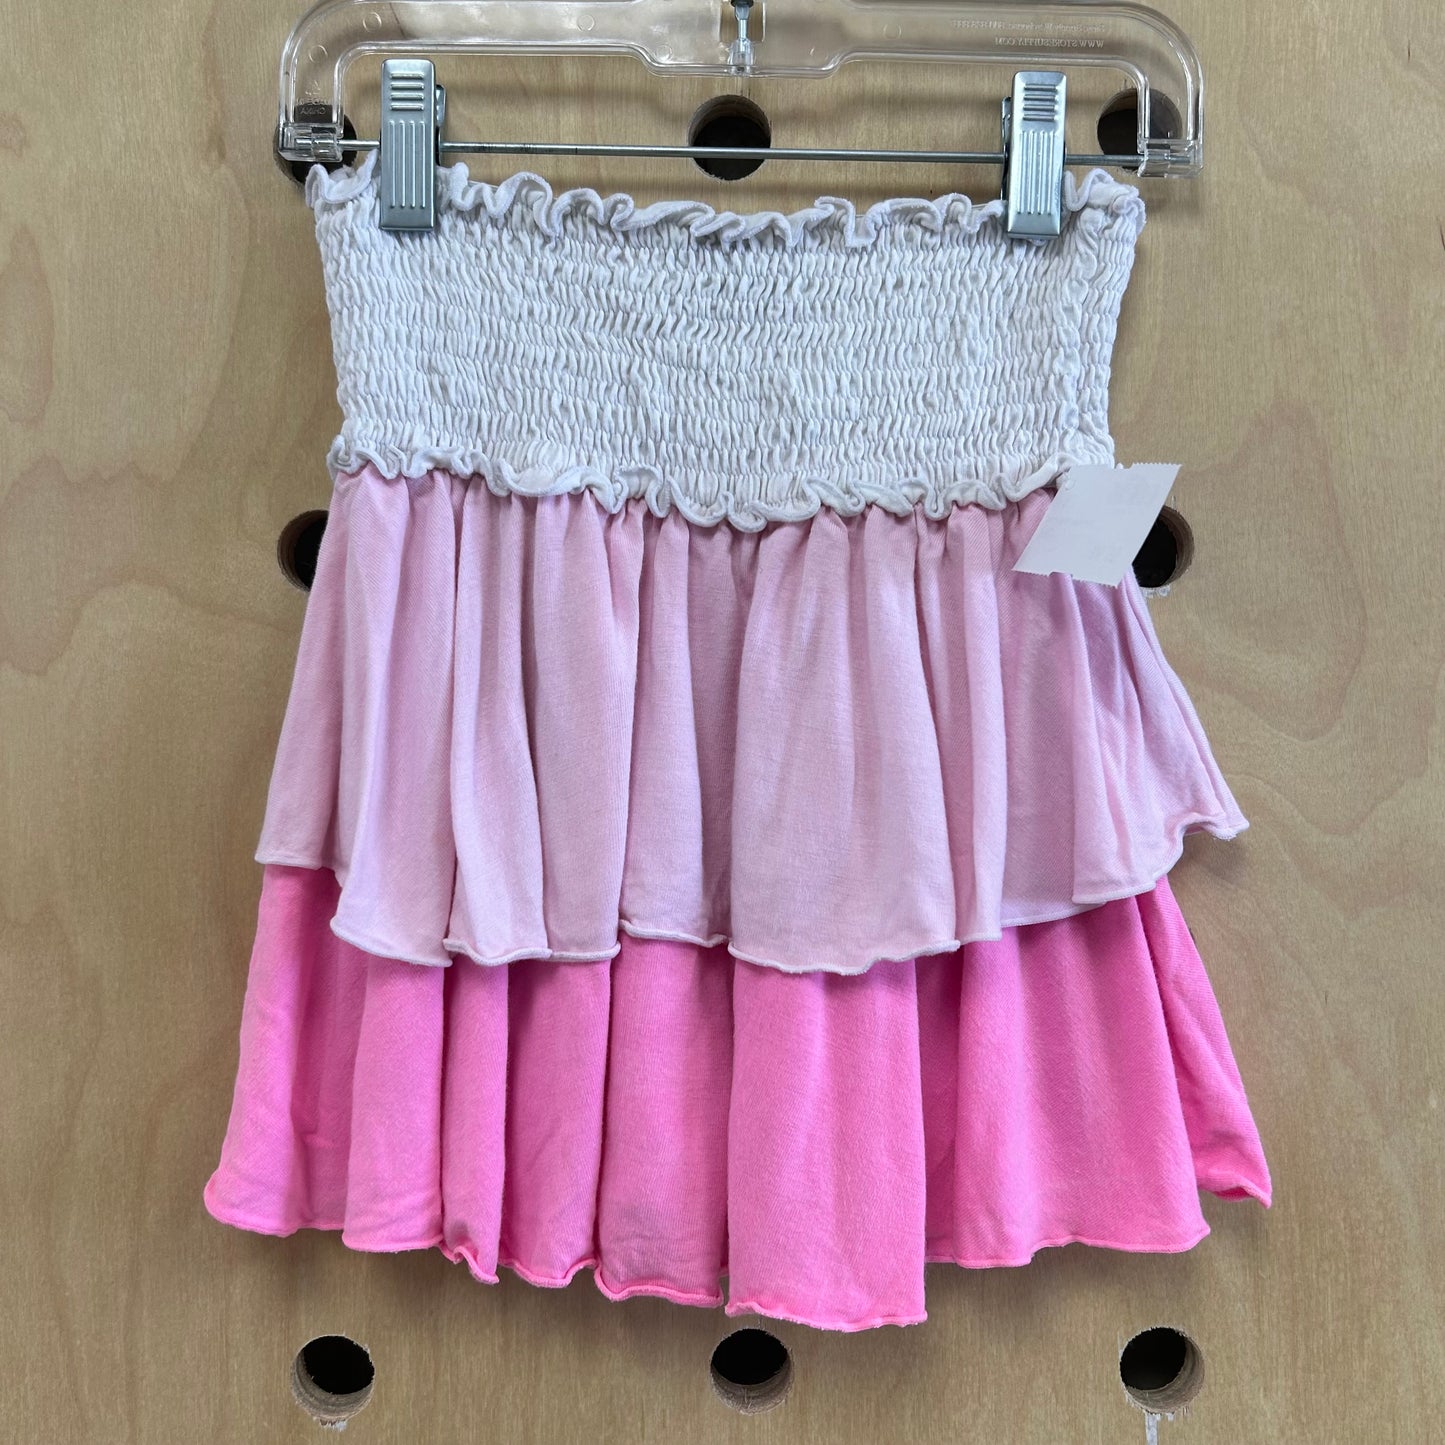 Pink & White Ruffle Skirt